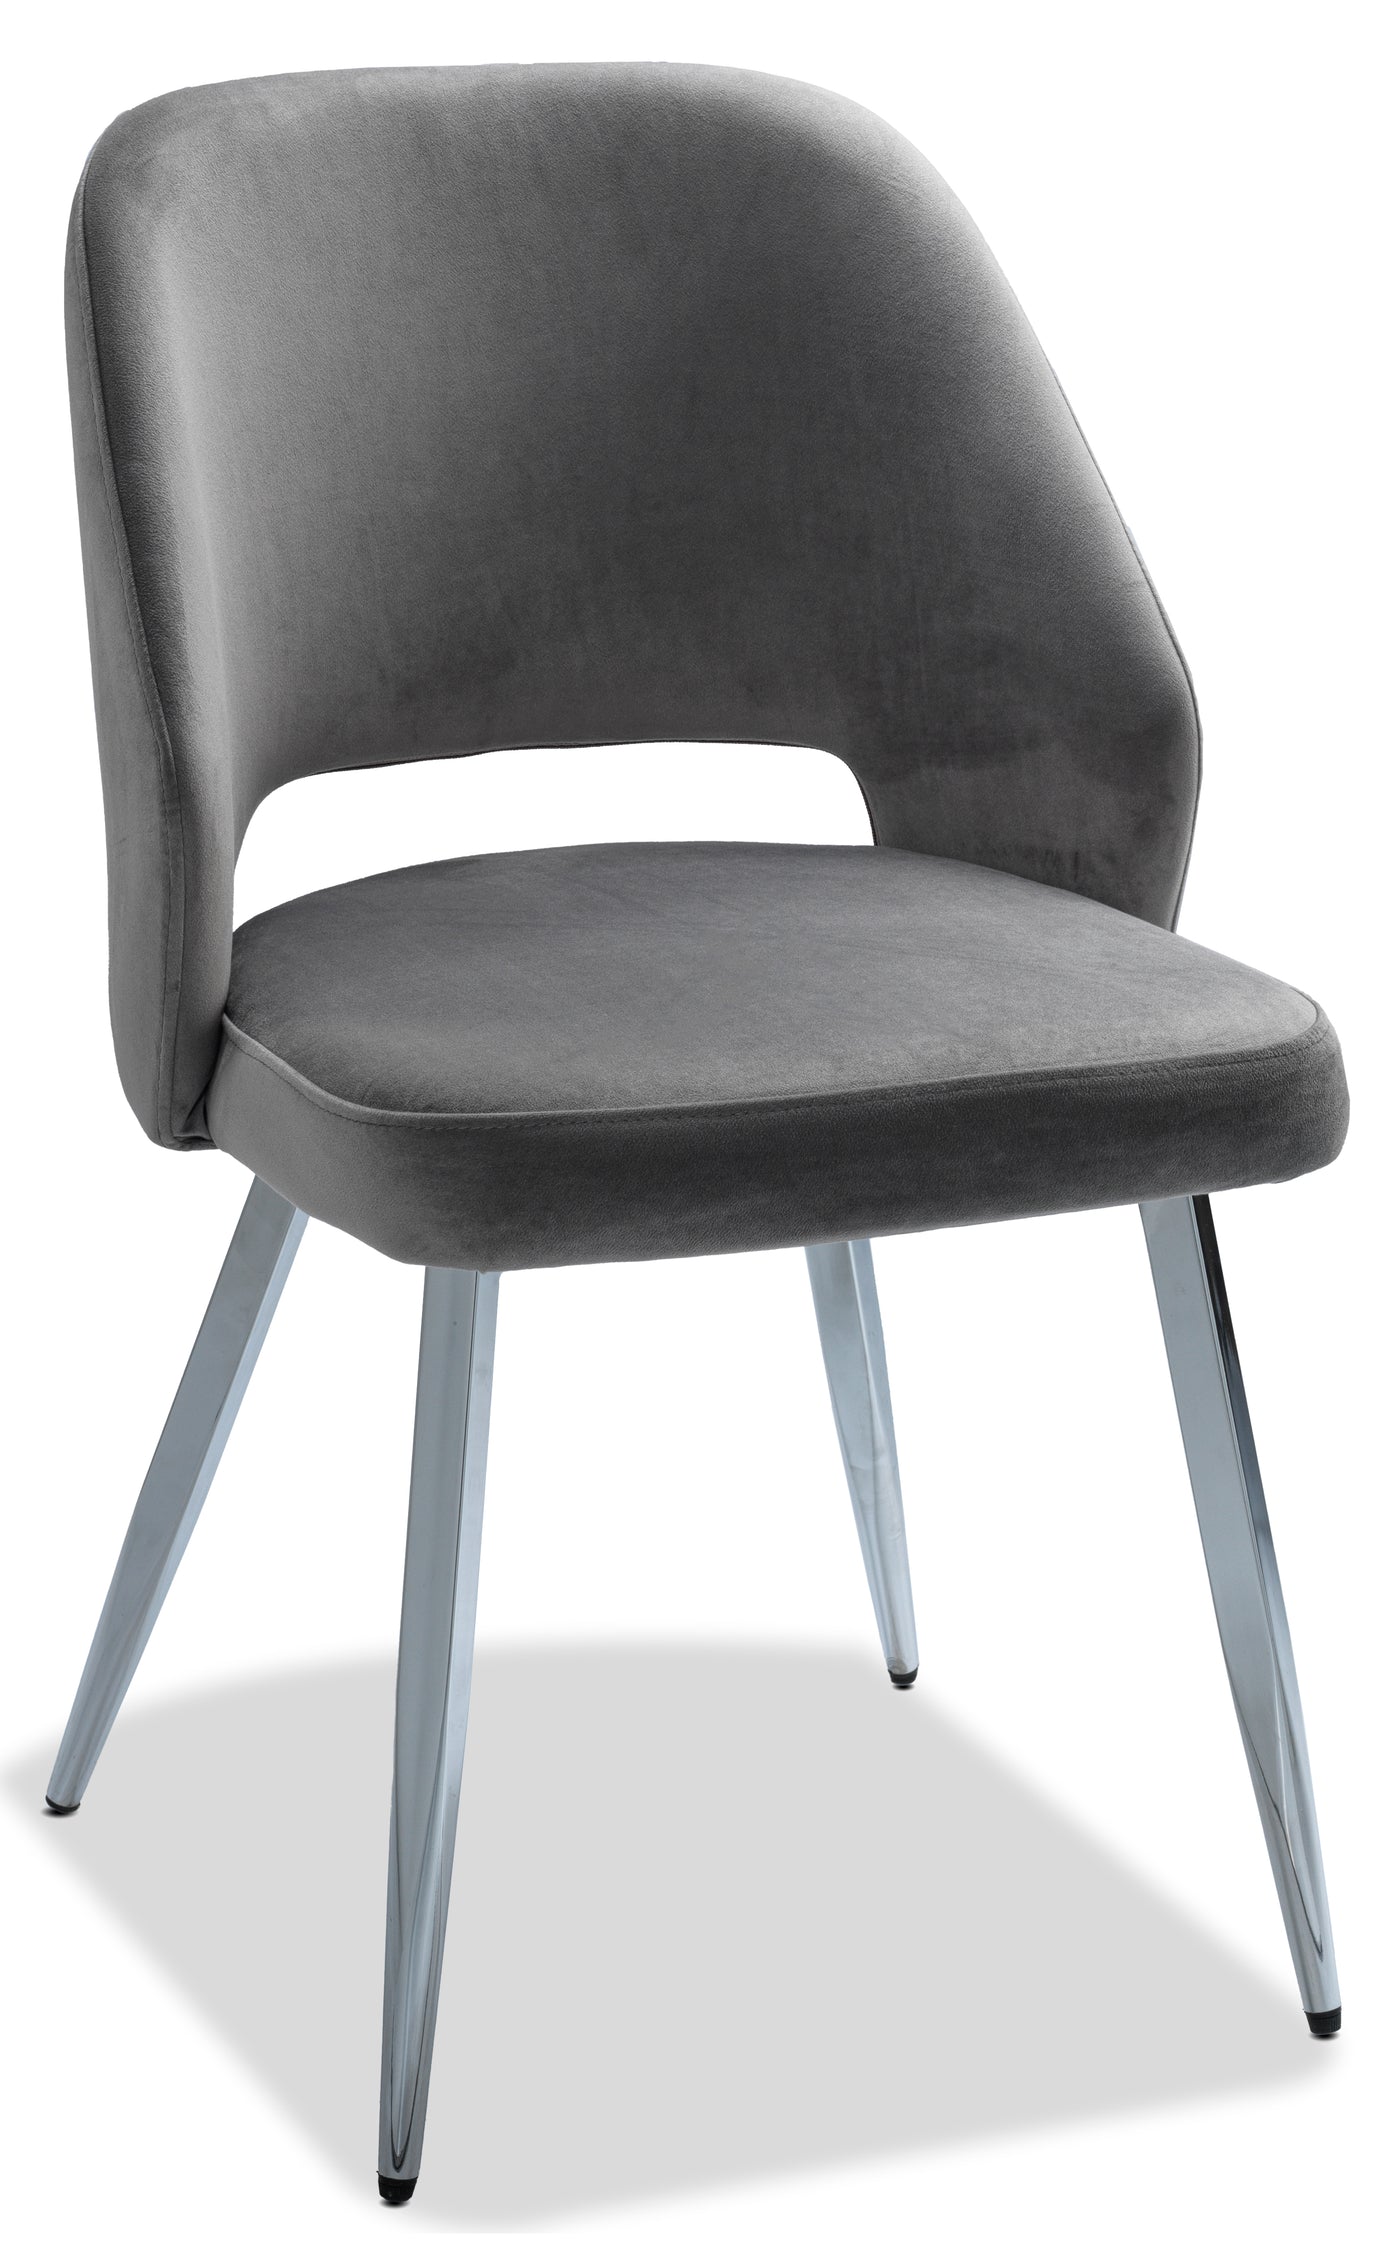 Sheen Side Chair - Grey